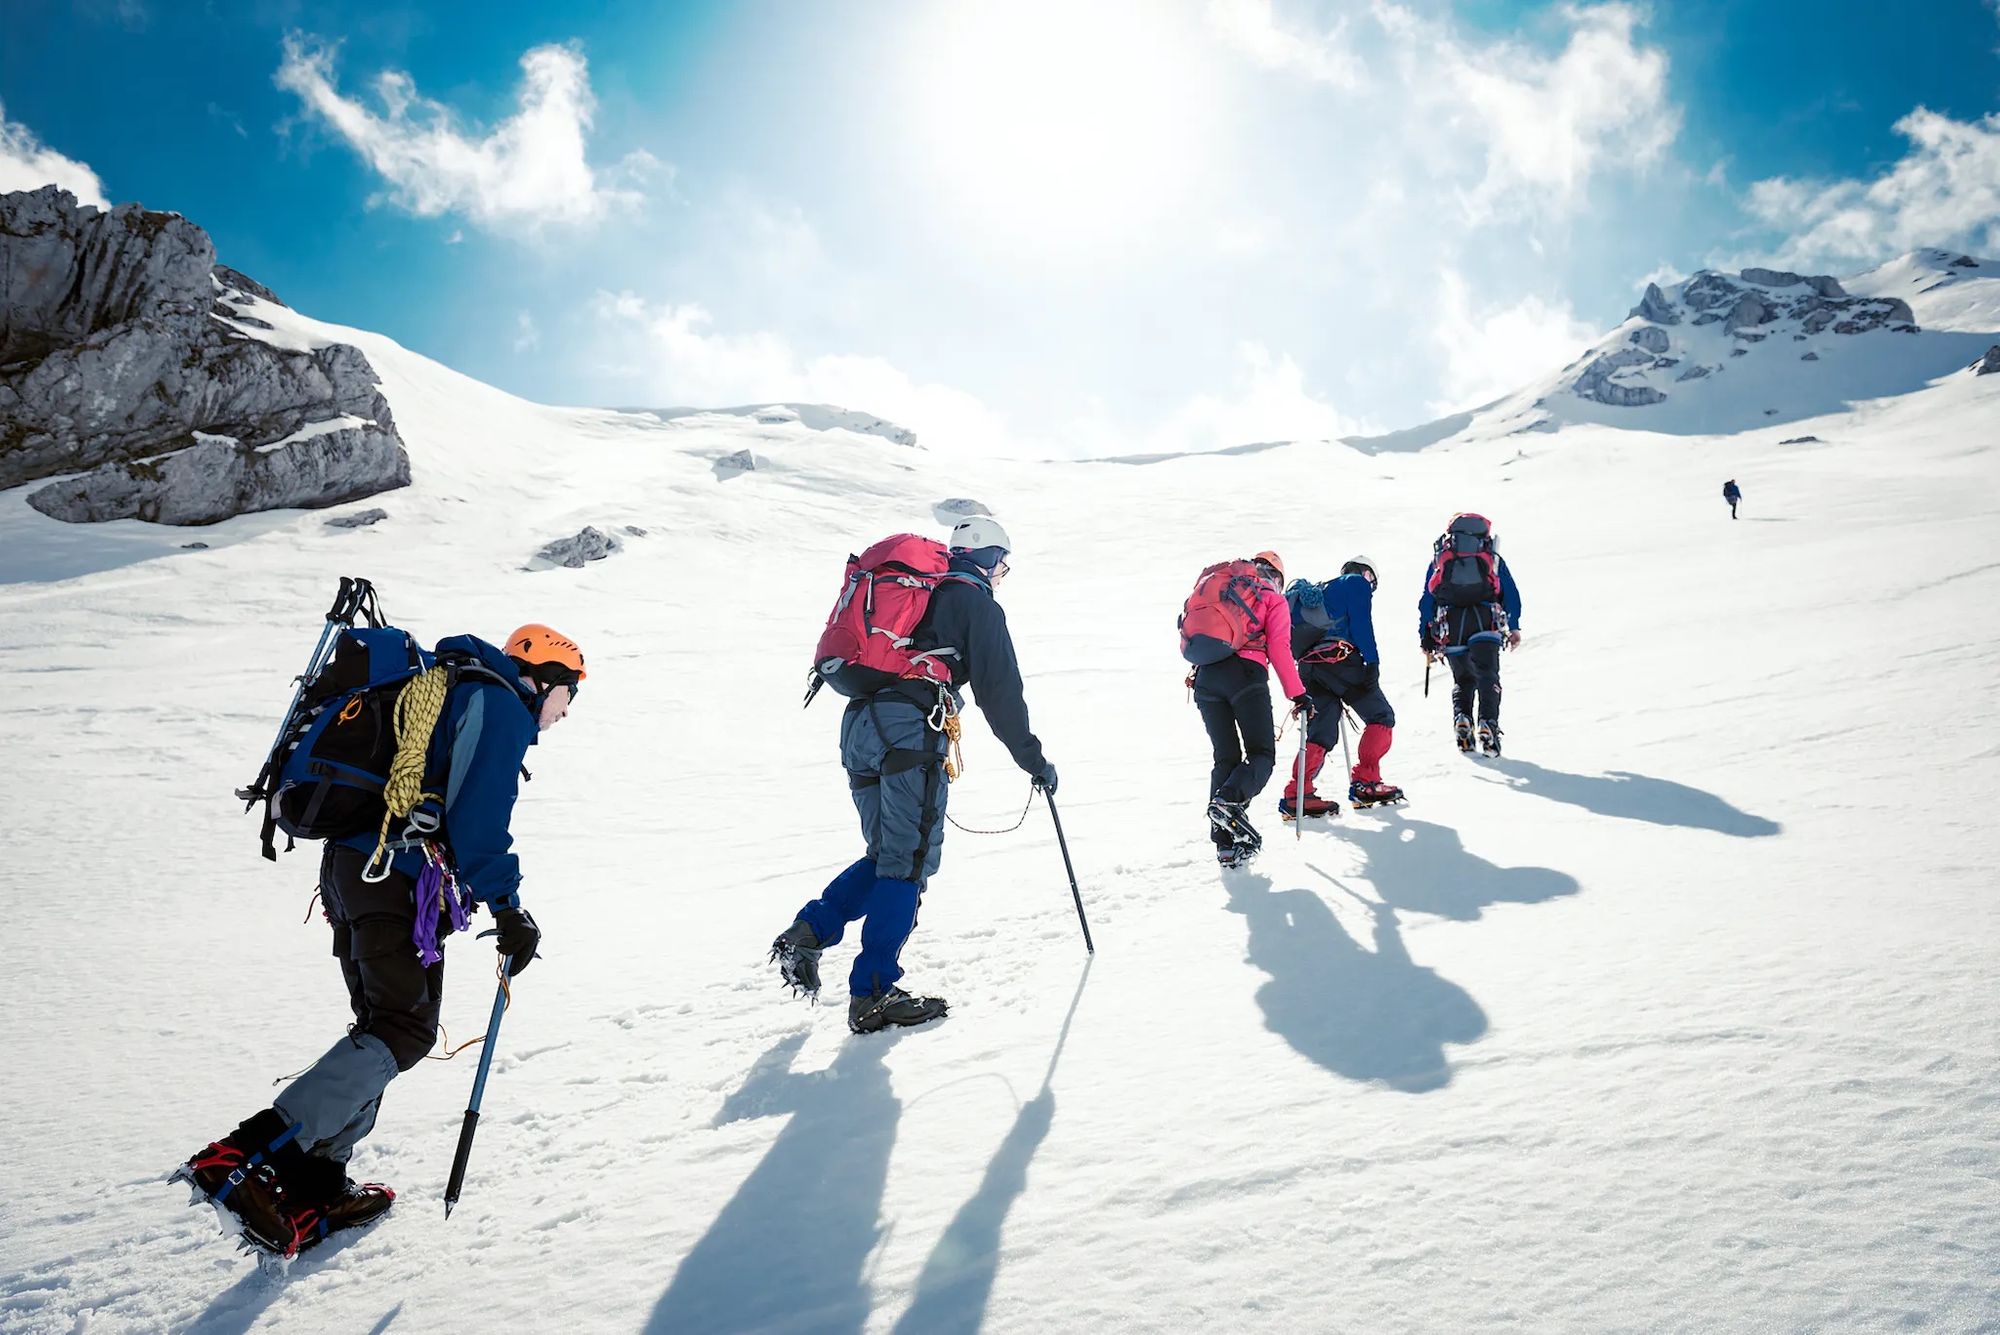 Intrepid hikers make their way to the summit of Yala Peak, in Nepal's Langtang Region